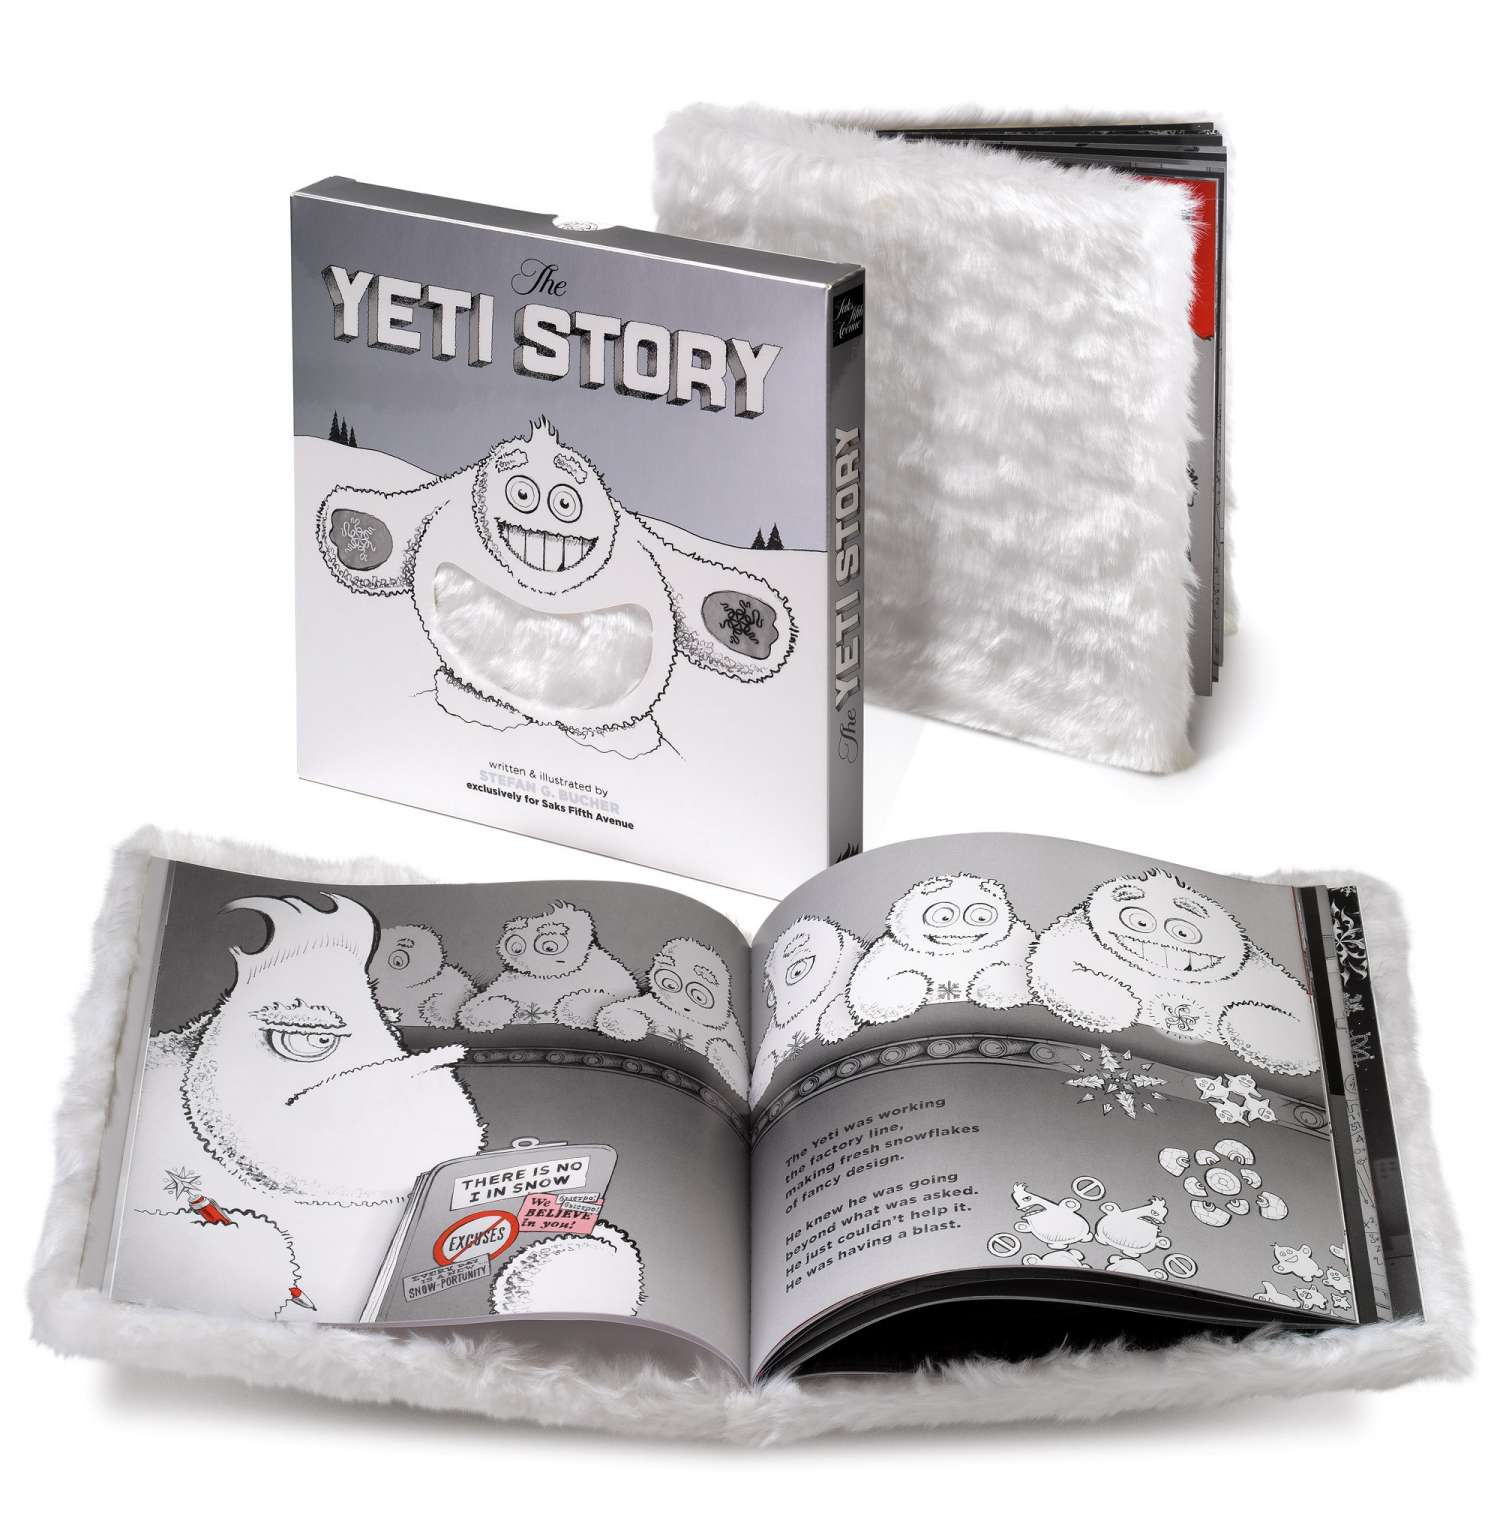 The Yeti Story